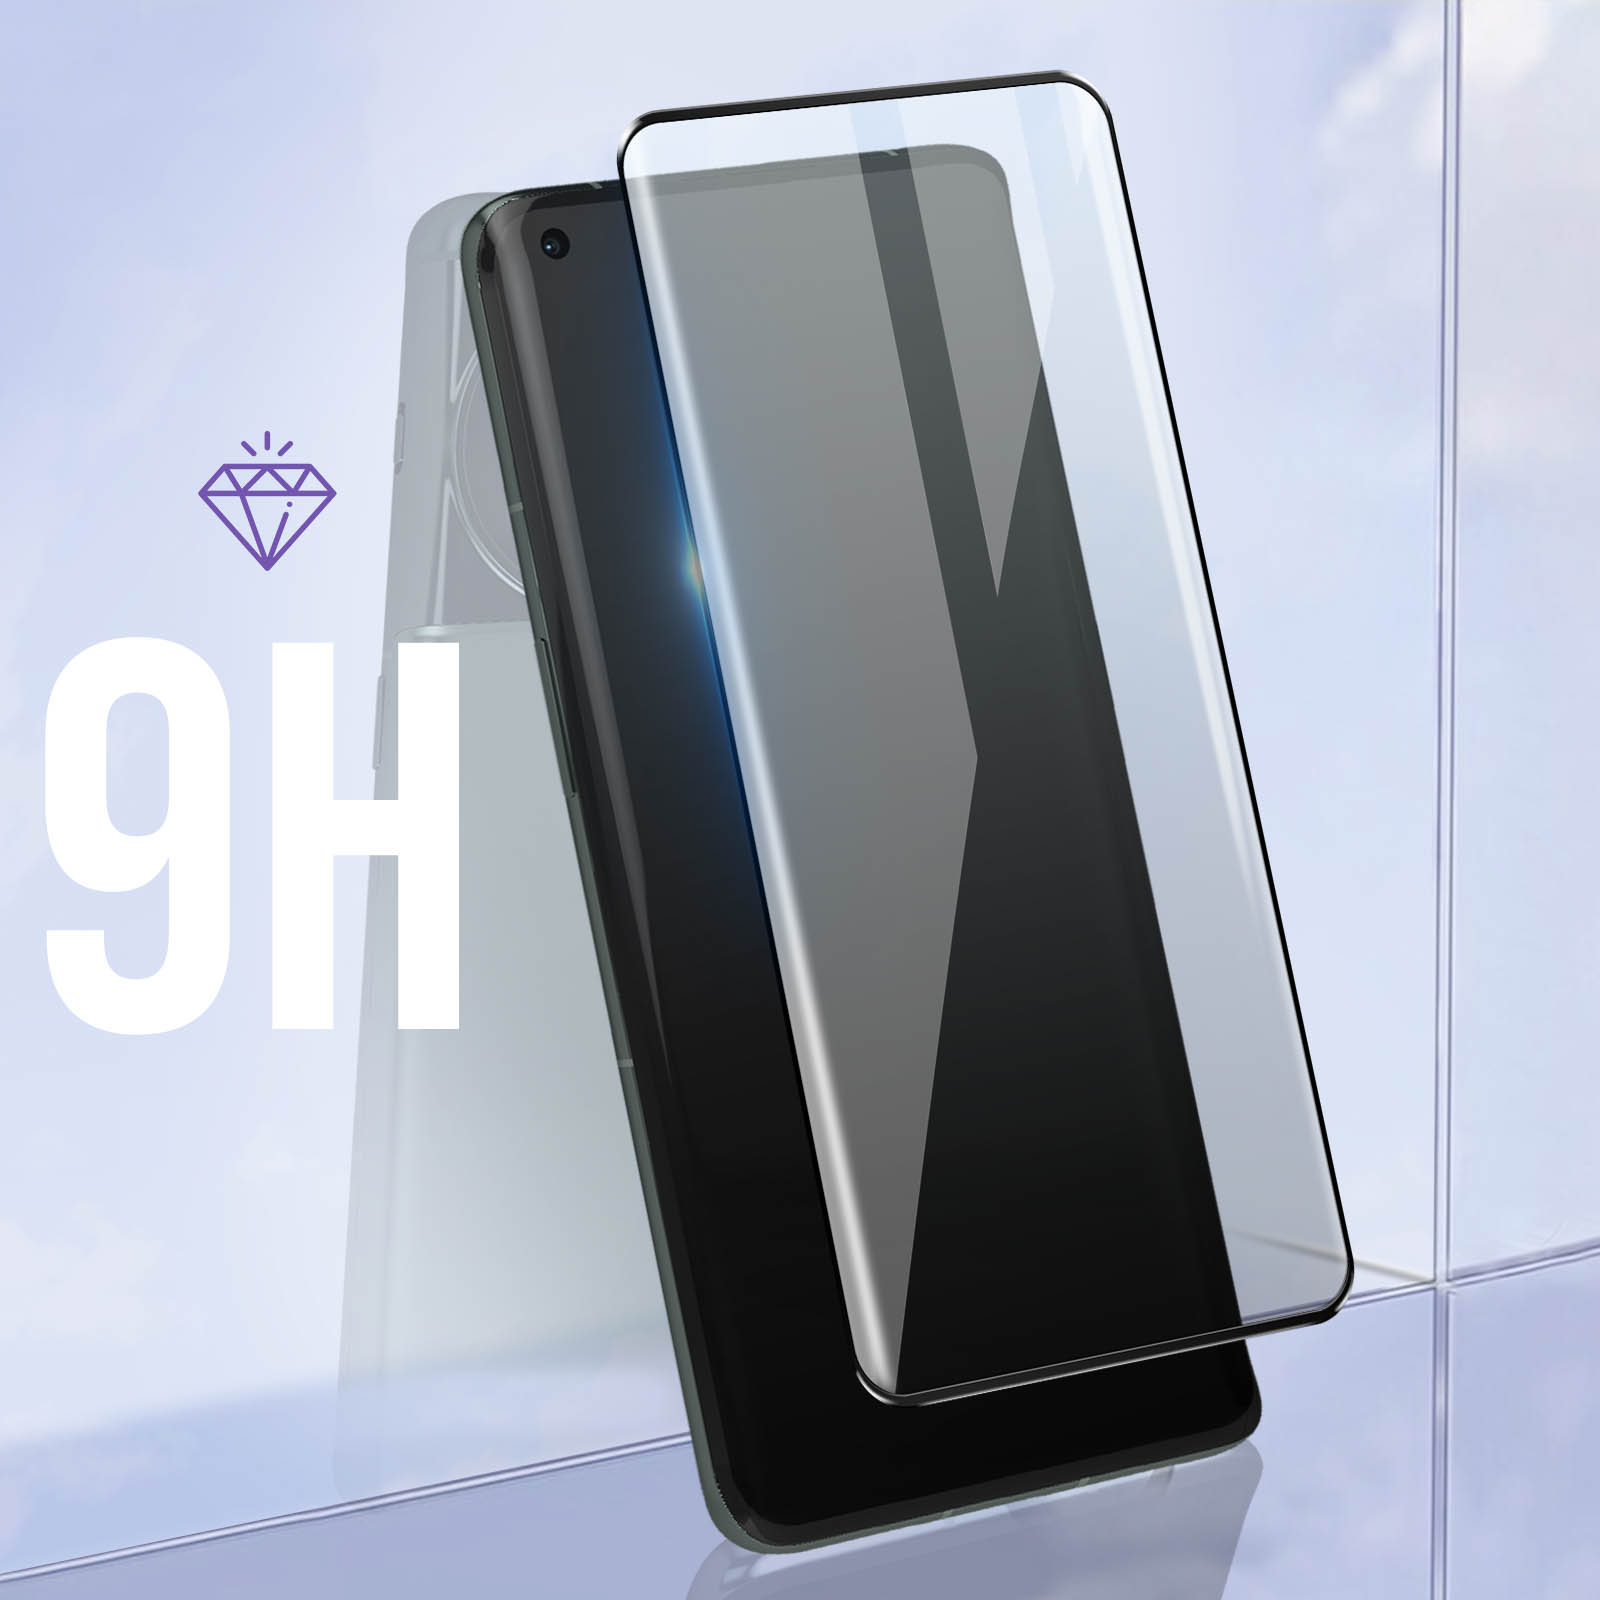 3 Films de protection écran verre trempé incurvé avec colle pour OnePlus 10  Pro 5G, OnePlus 11 5G 1+11 [Novago] - Protection d'écran pour smartphone -  Achat & prix